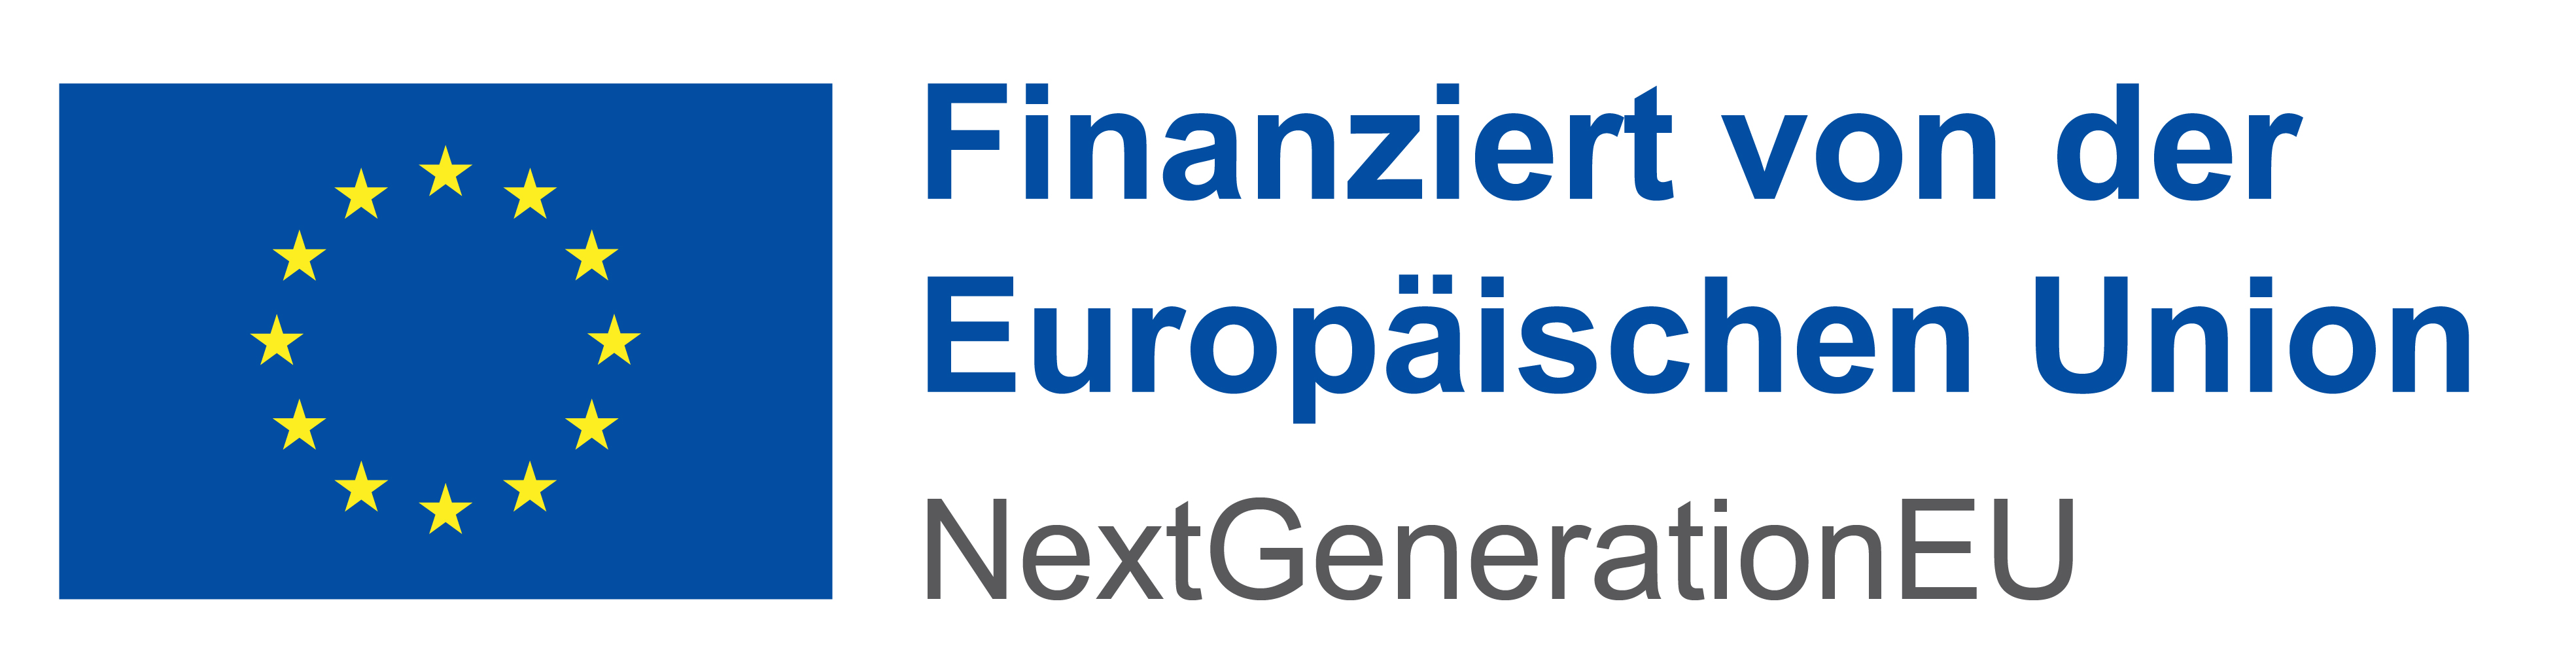 Finanziert von der EU: NextGenerationEU